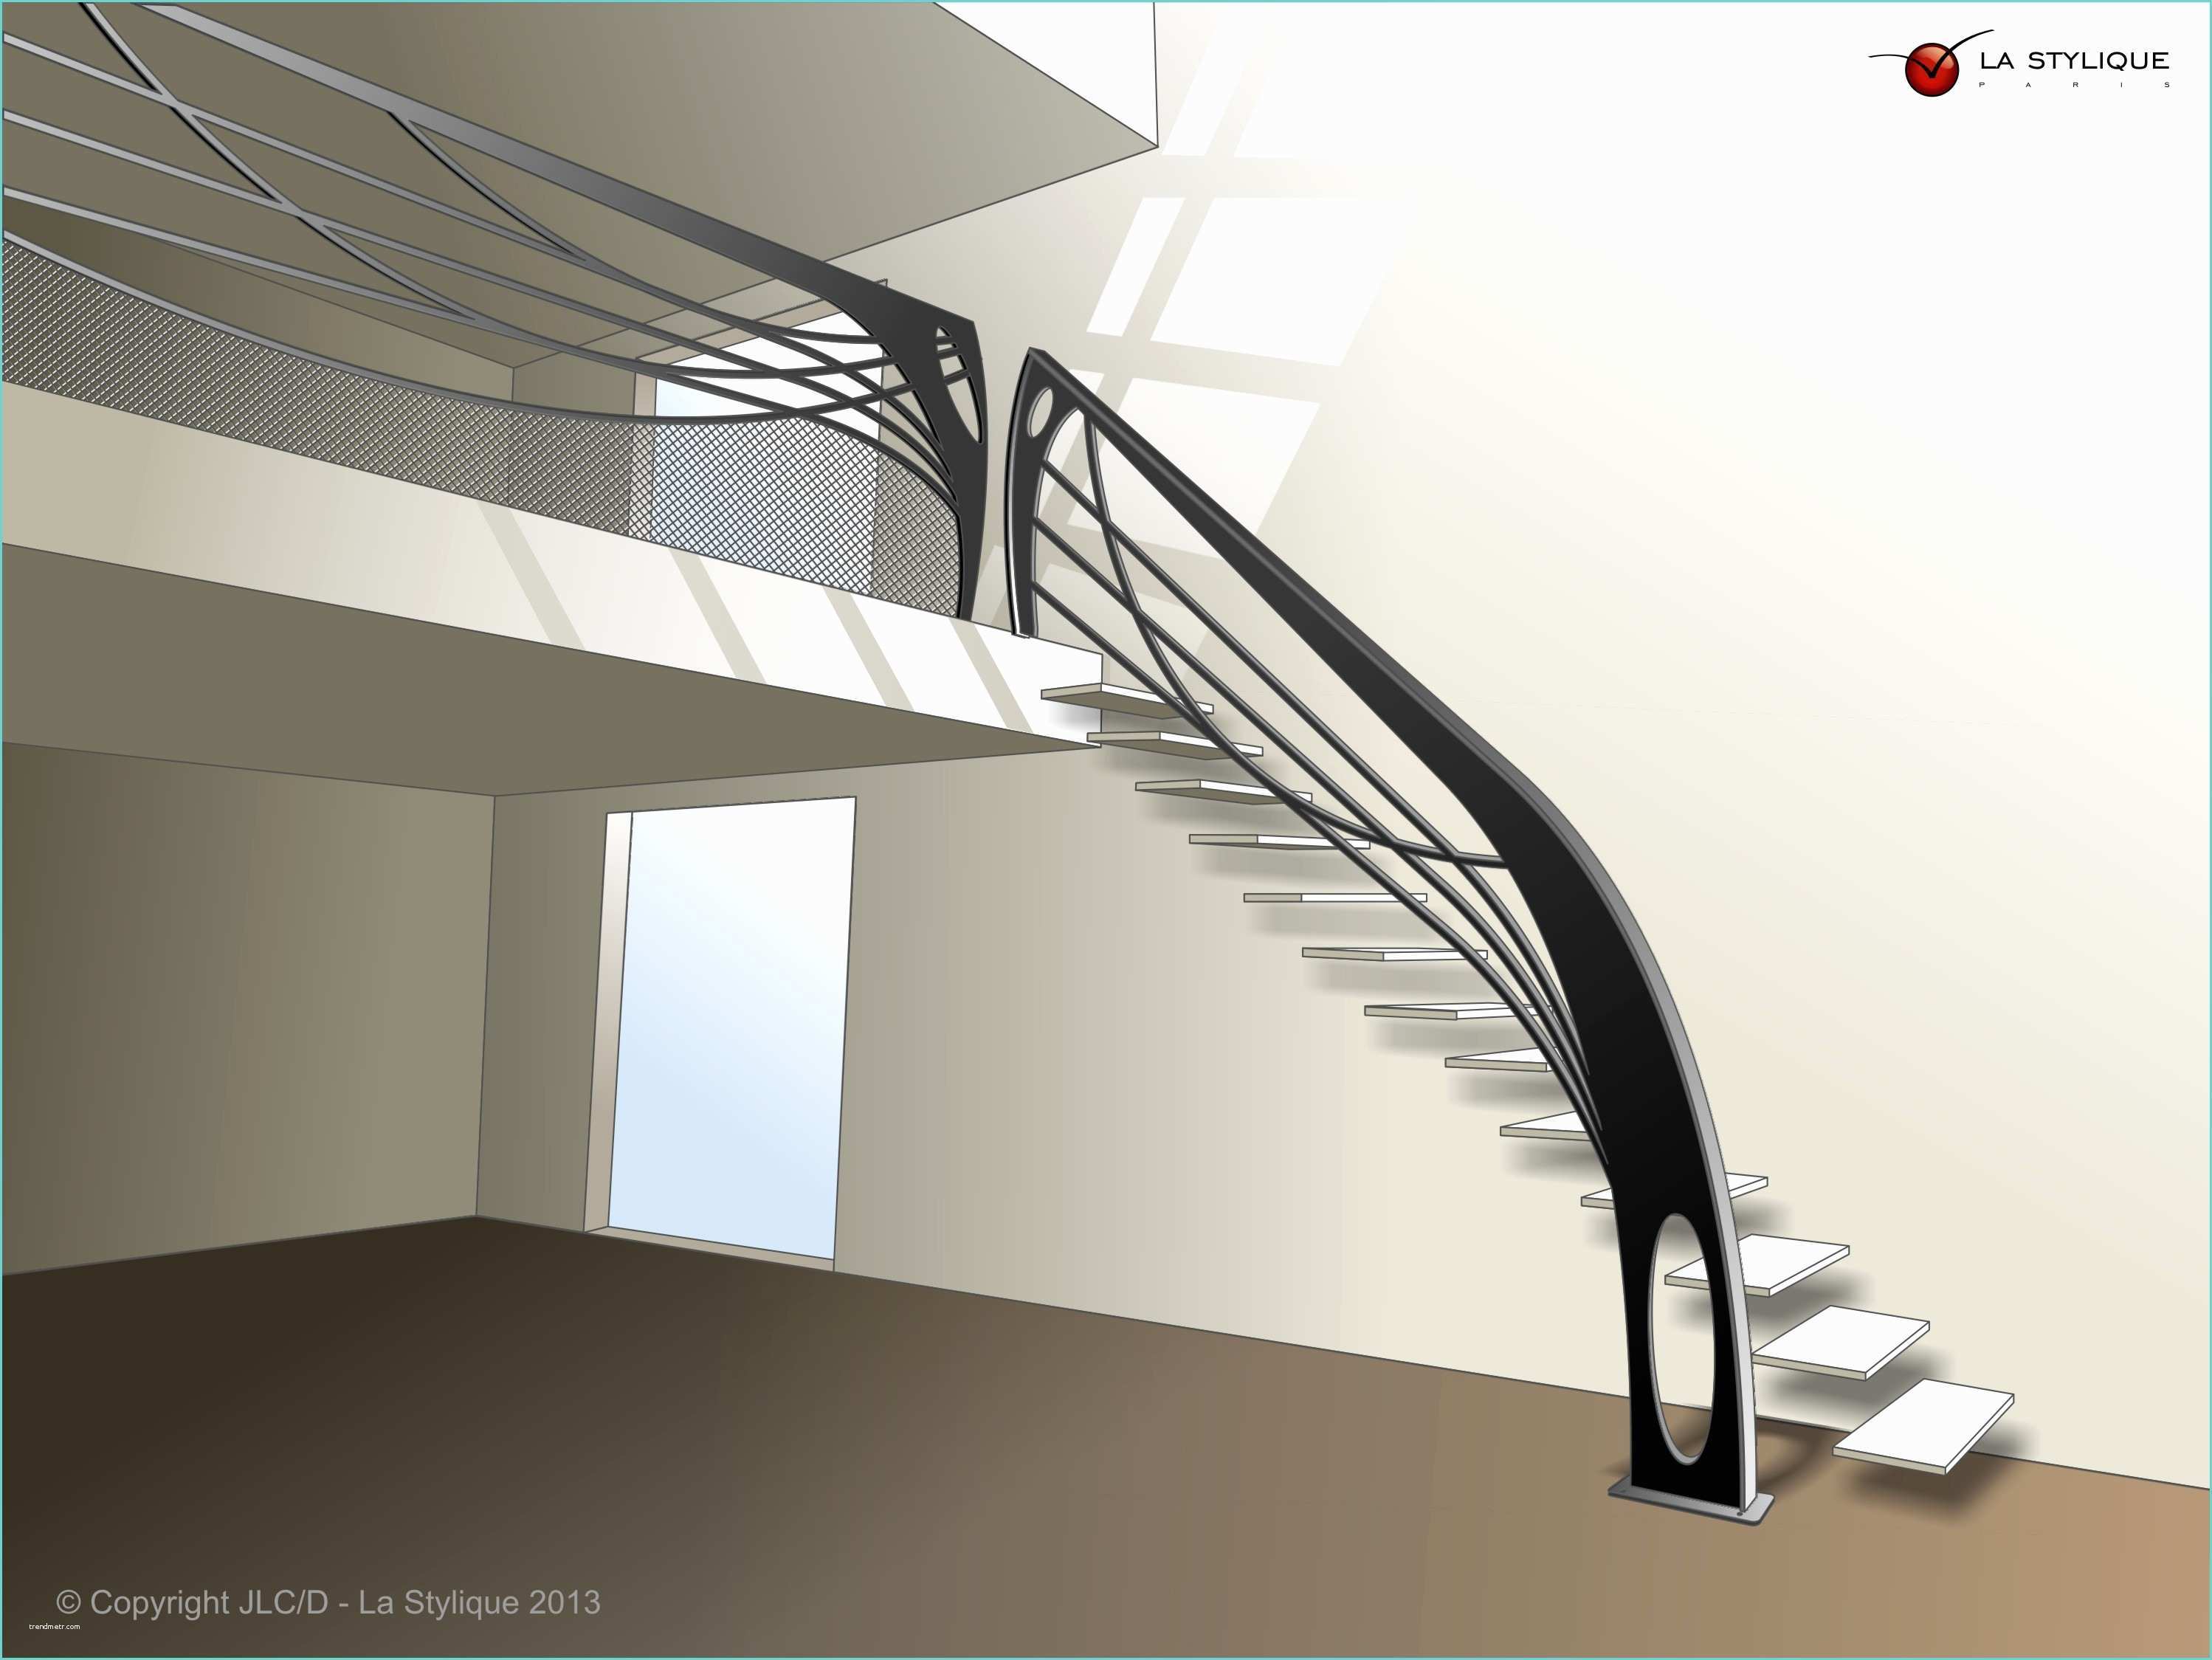 Garde Corps Interieur Moderne Le Créateur D’escalier Design Décline son Oeuvre